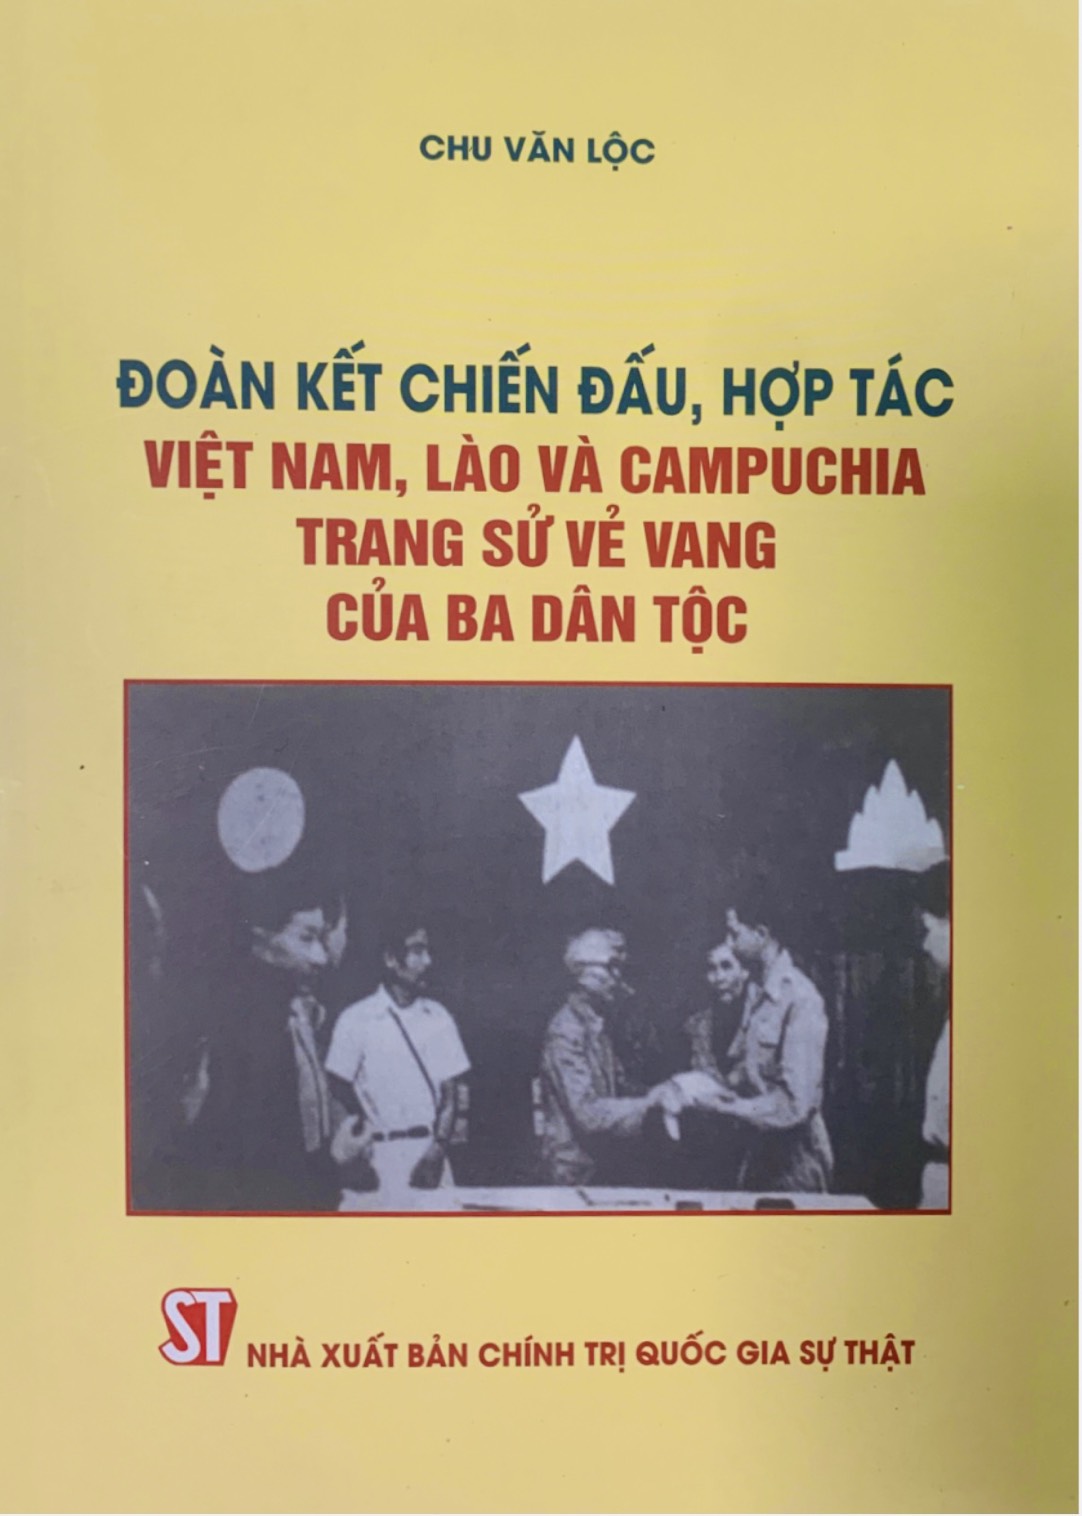 Đoàn kết chiến đấu, hợp tác Việt Nam, Lào, Campuchia - Trang sử vẻ vang của ba dân tộc (bản in 2022)